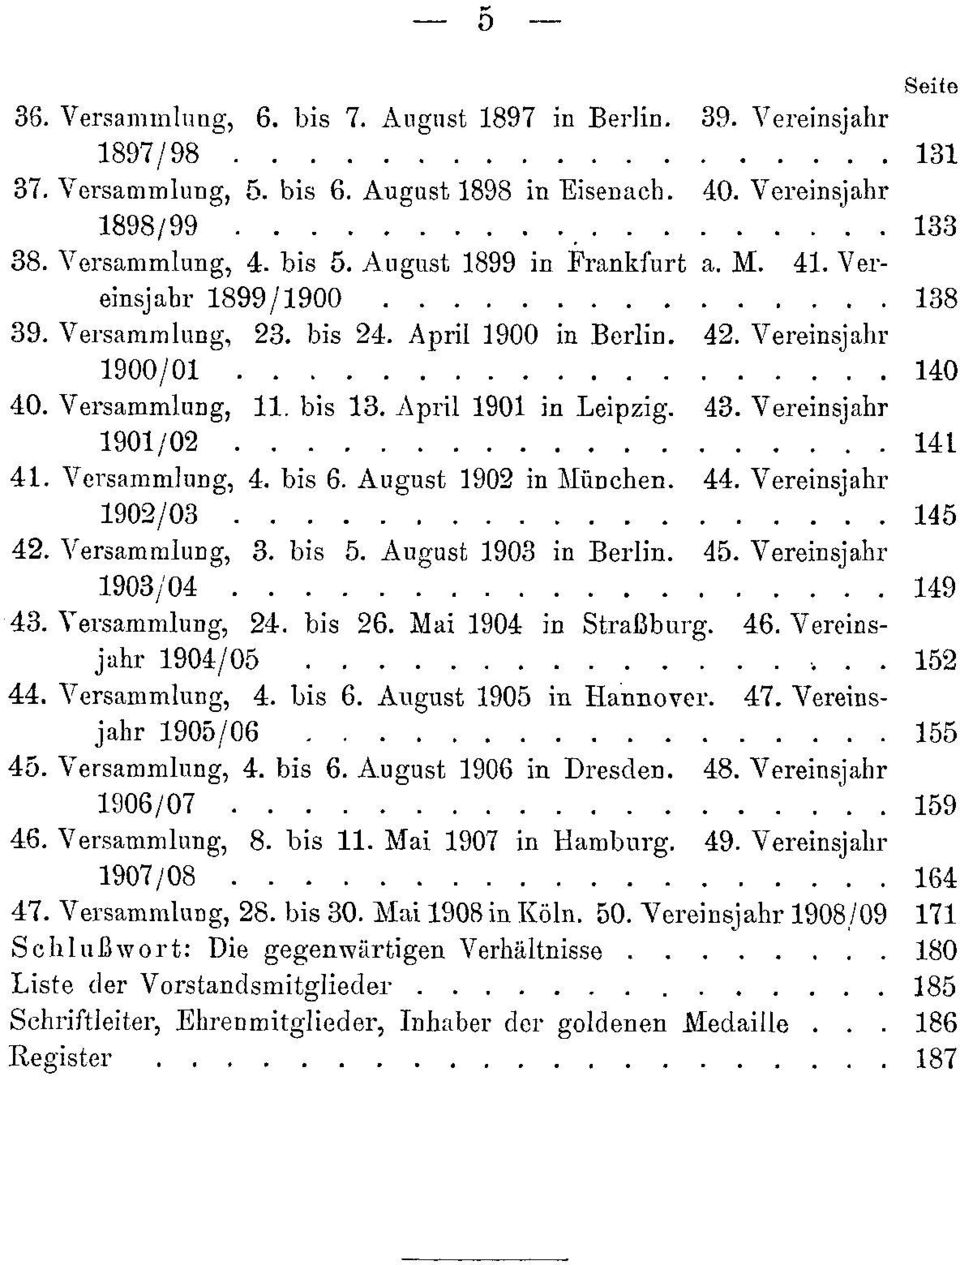 April 1901 in Leipzig. 43. Vereinsjahr 1901/02....... 141 41. Versammlung, 4. bis 6. August 1902 in :München. 44. Vereinsjahr 1902/03 145 42. Versammlung, 3. bis 5. August 1903 in Berlin. 45.